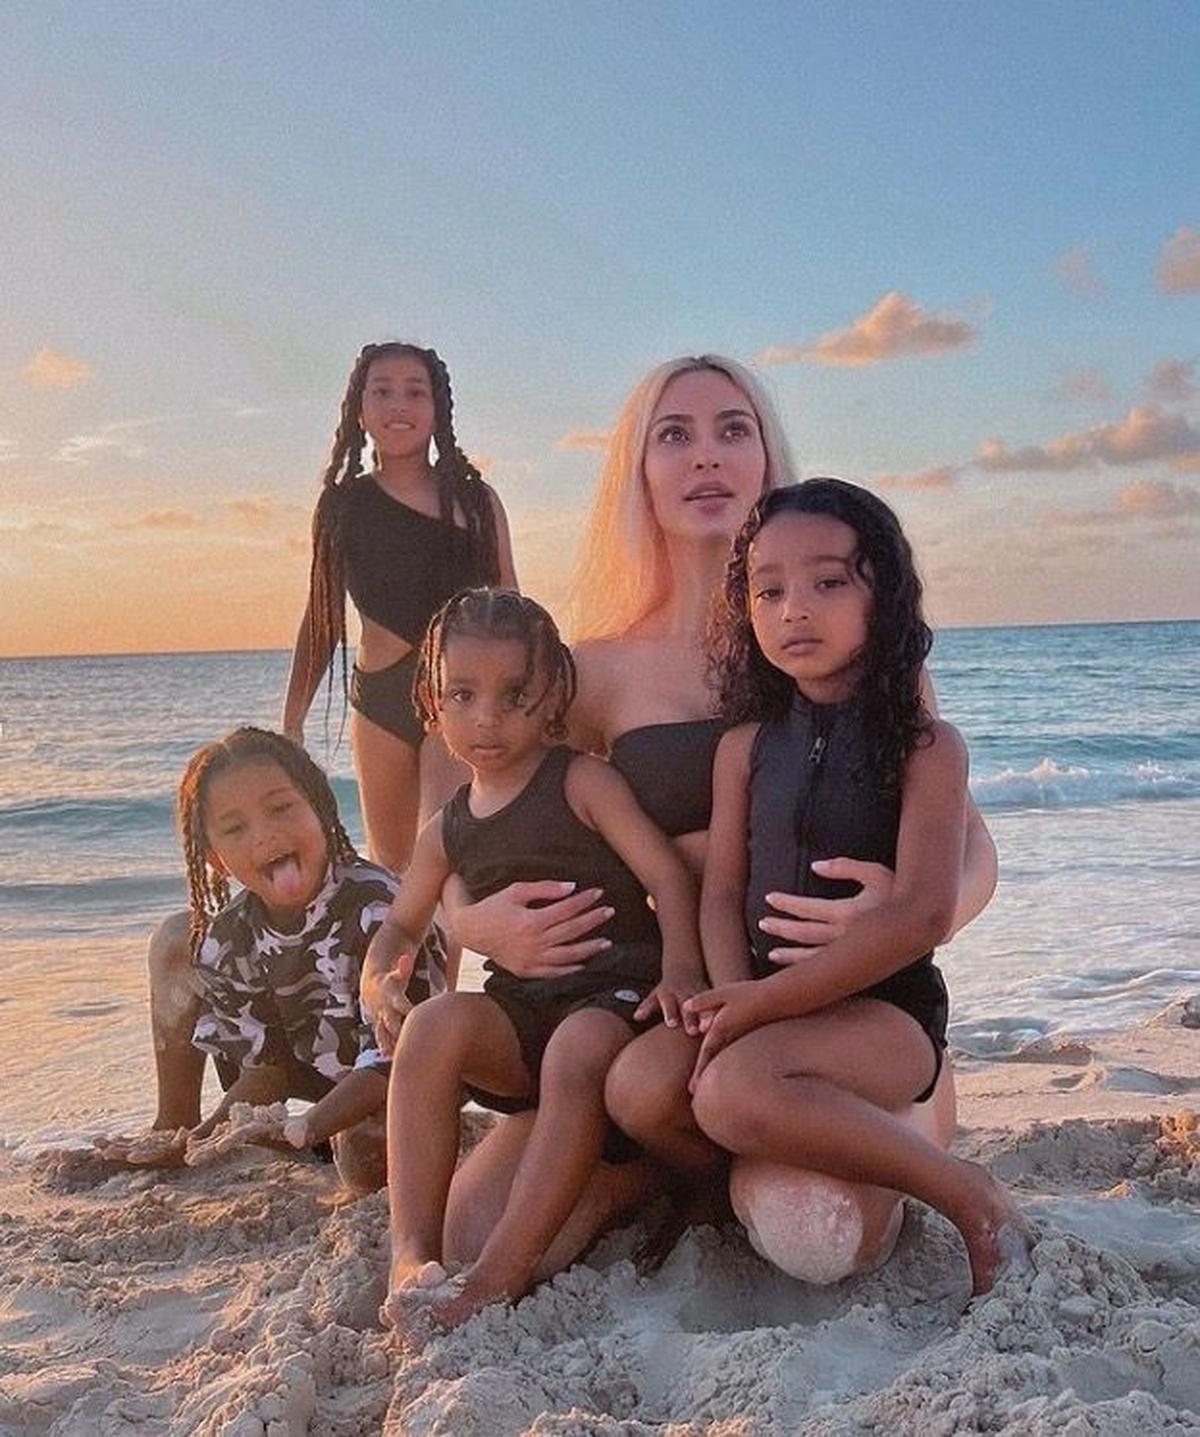  | Kim junto a sus cuatro hijos.
Fuente: Instagram @kimkardashian